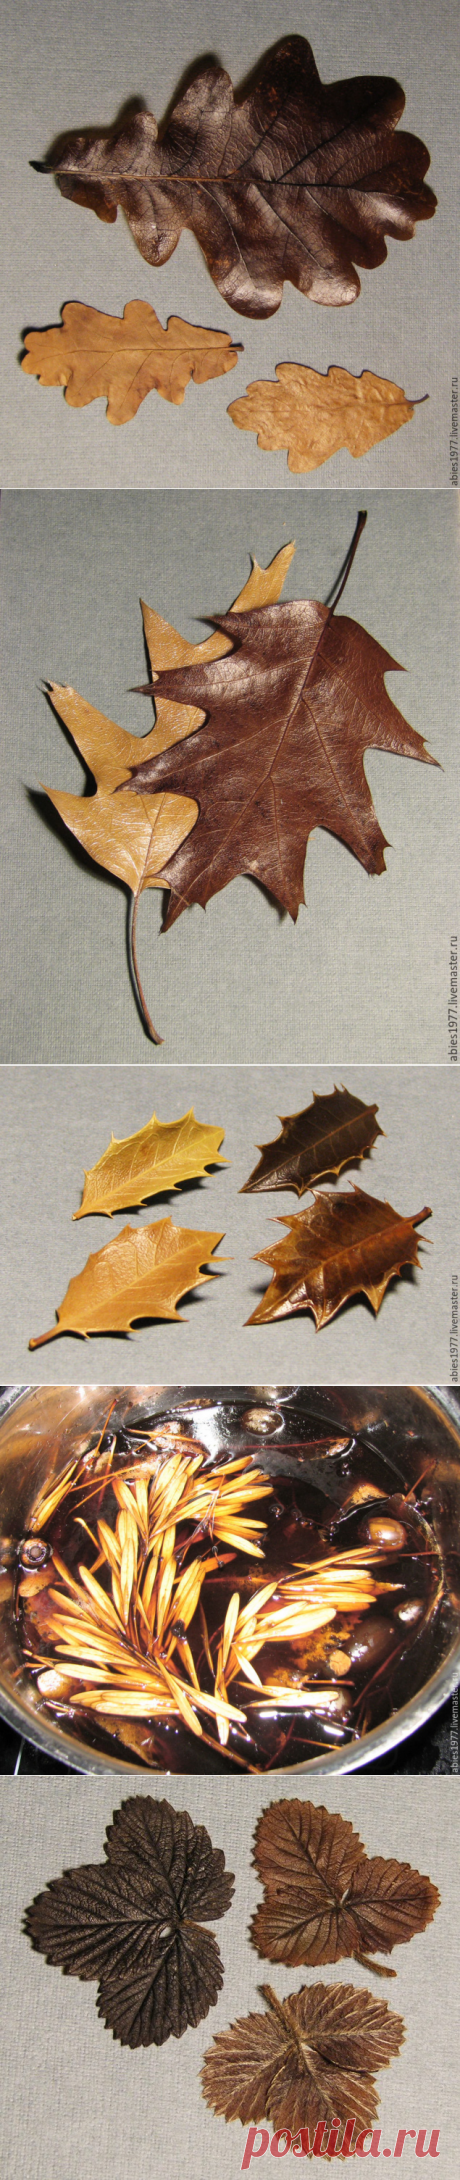 Как быстро законсервировать листья в глицерине - Ярмарка Мастеров - ручная работа, handmade